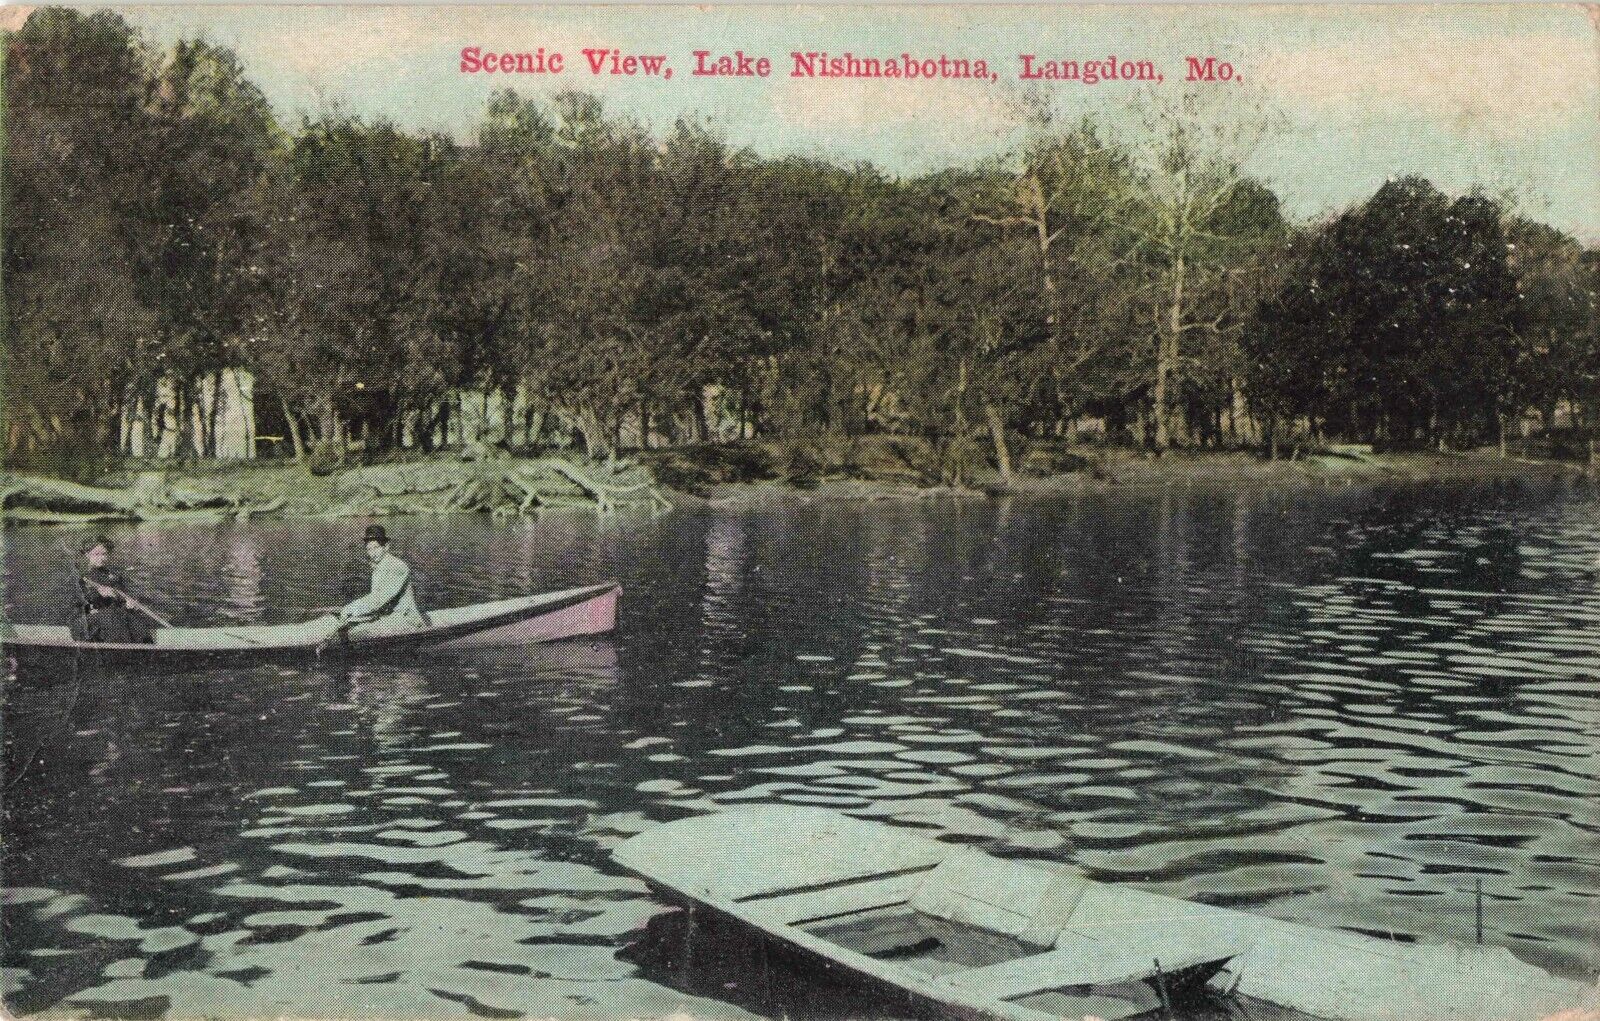 Scenic View Lake Nishnabotna Langdon Missouri MO 1911 Postcard